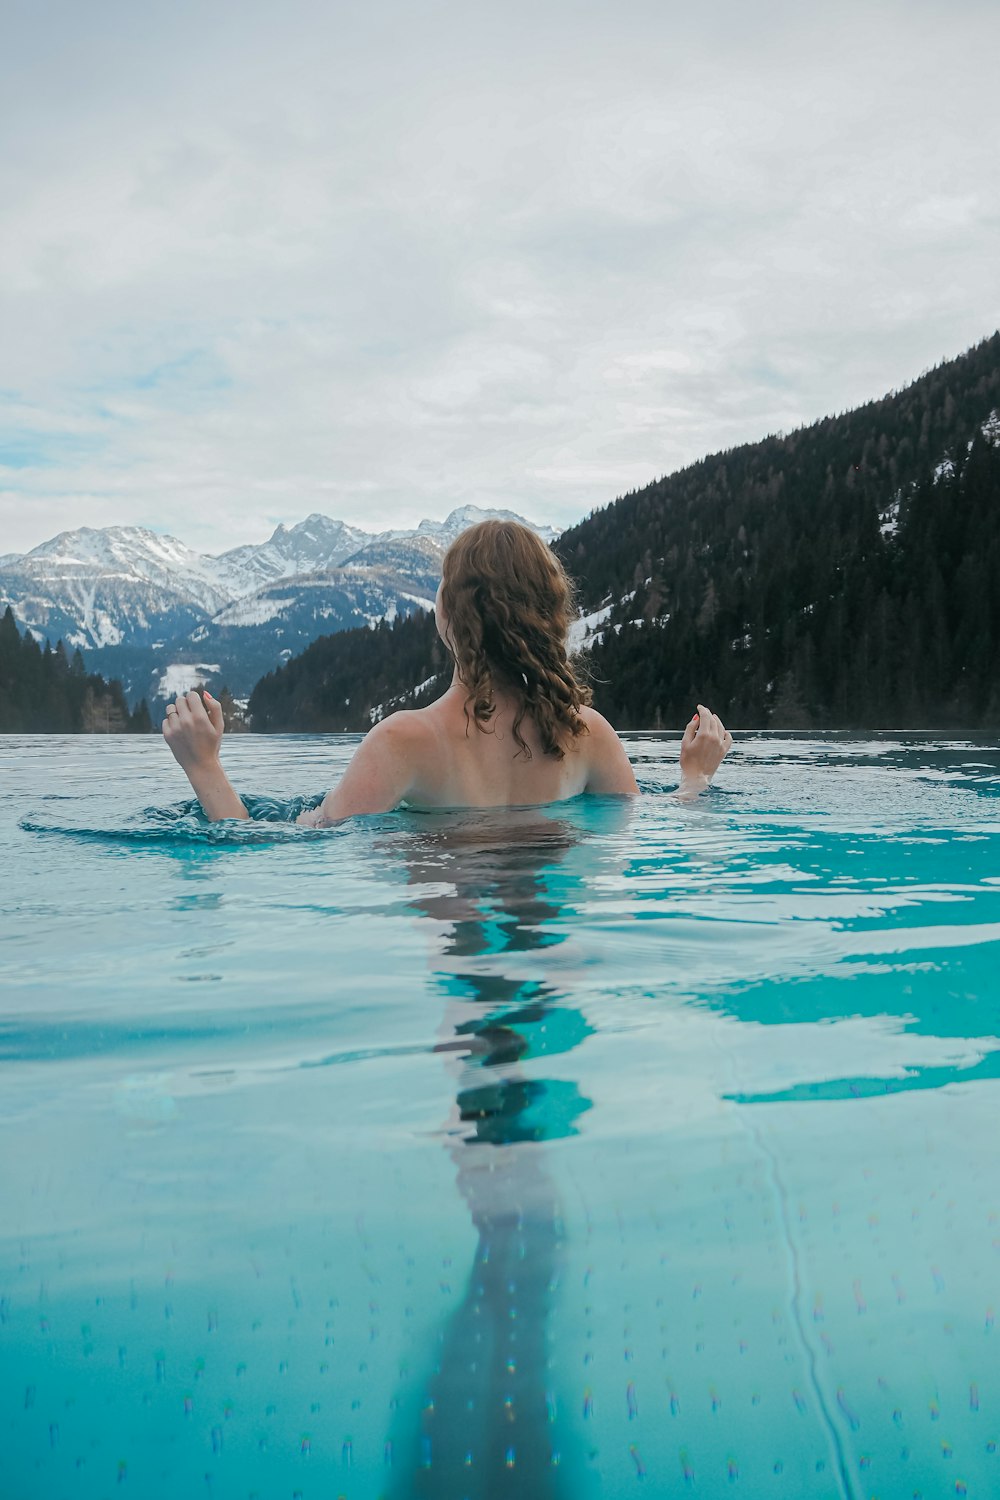 Une femme nageant dans une piscine avec des montagnes en arrière-plan